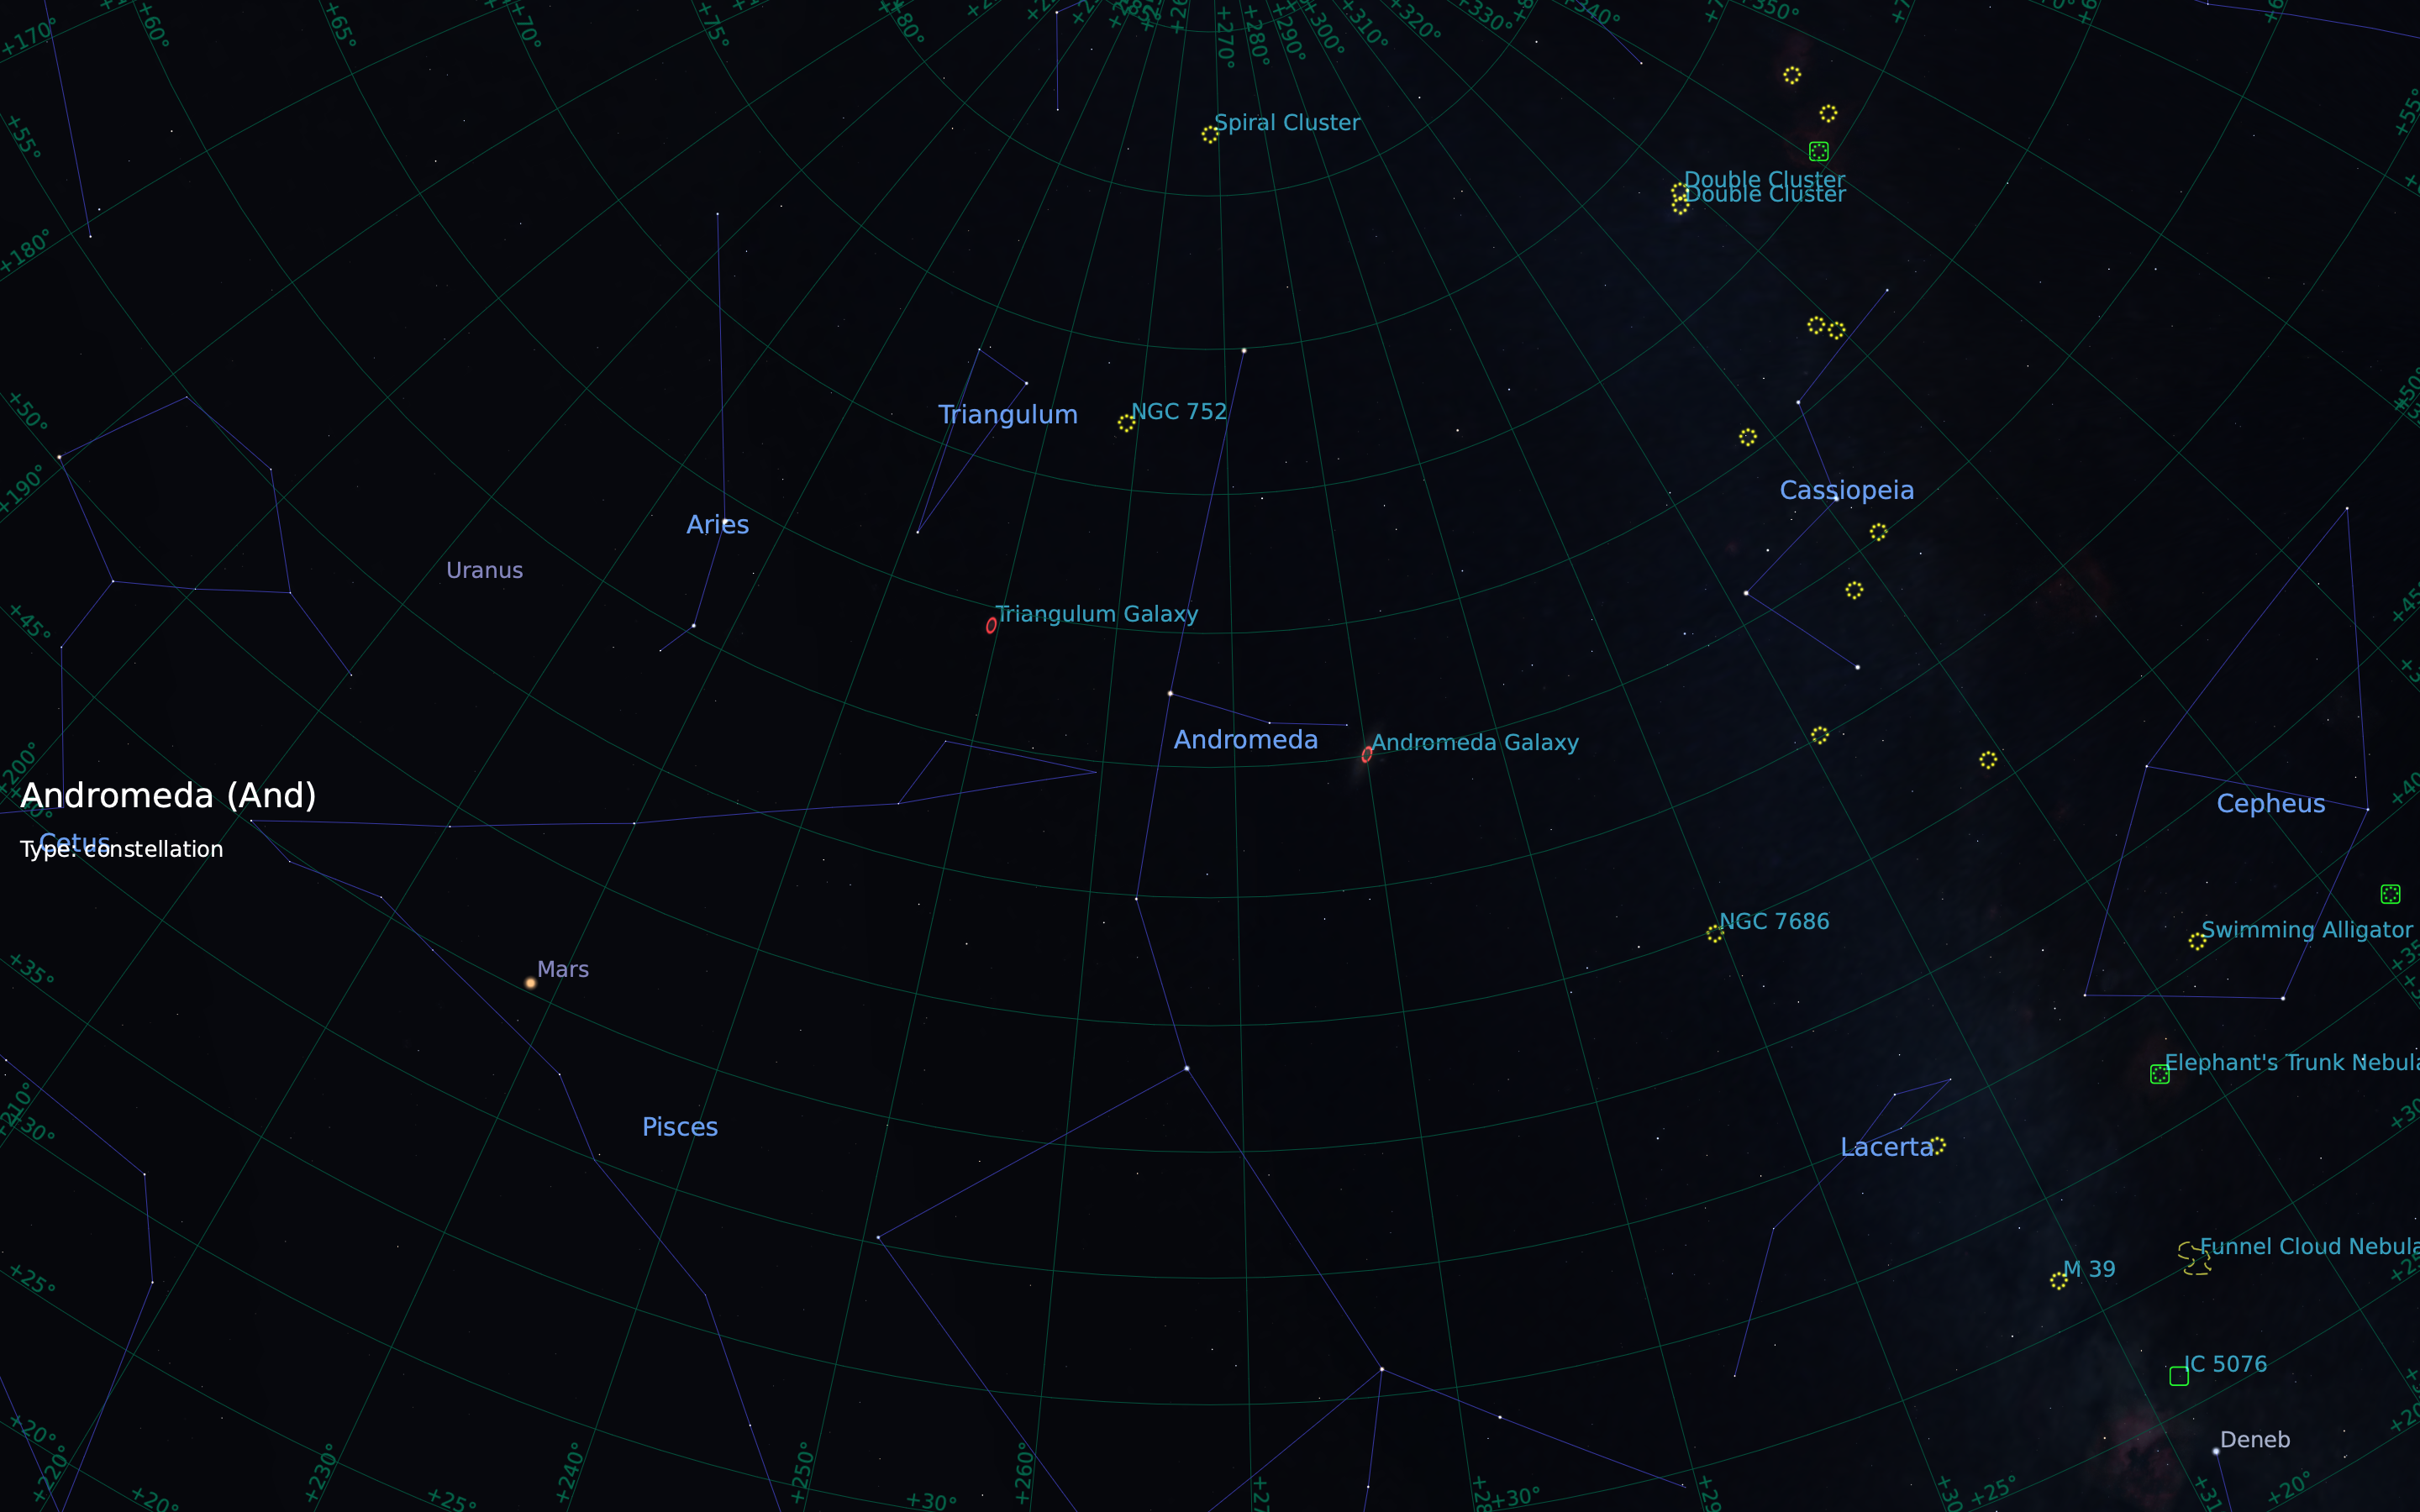 stellarium-001 Andromeda.png